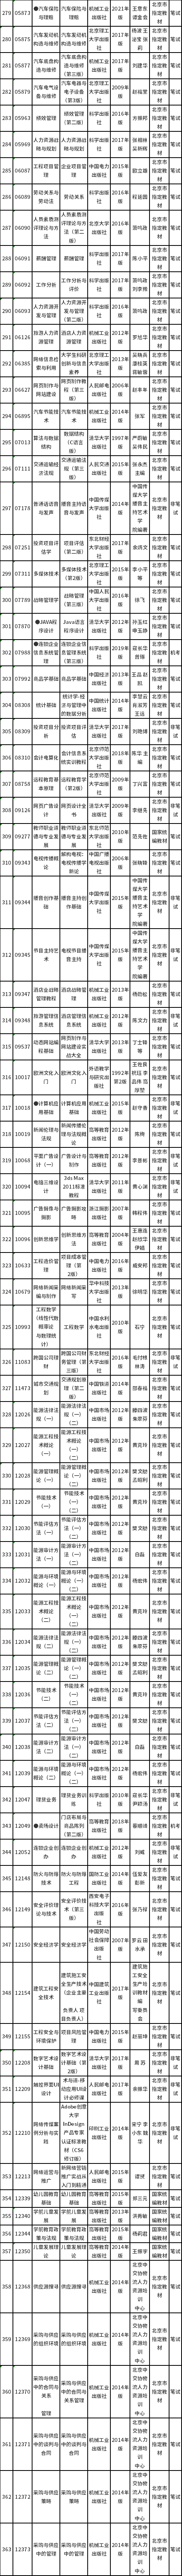 北京市2022年高等教育自学考试教材信息表